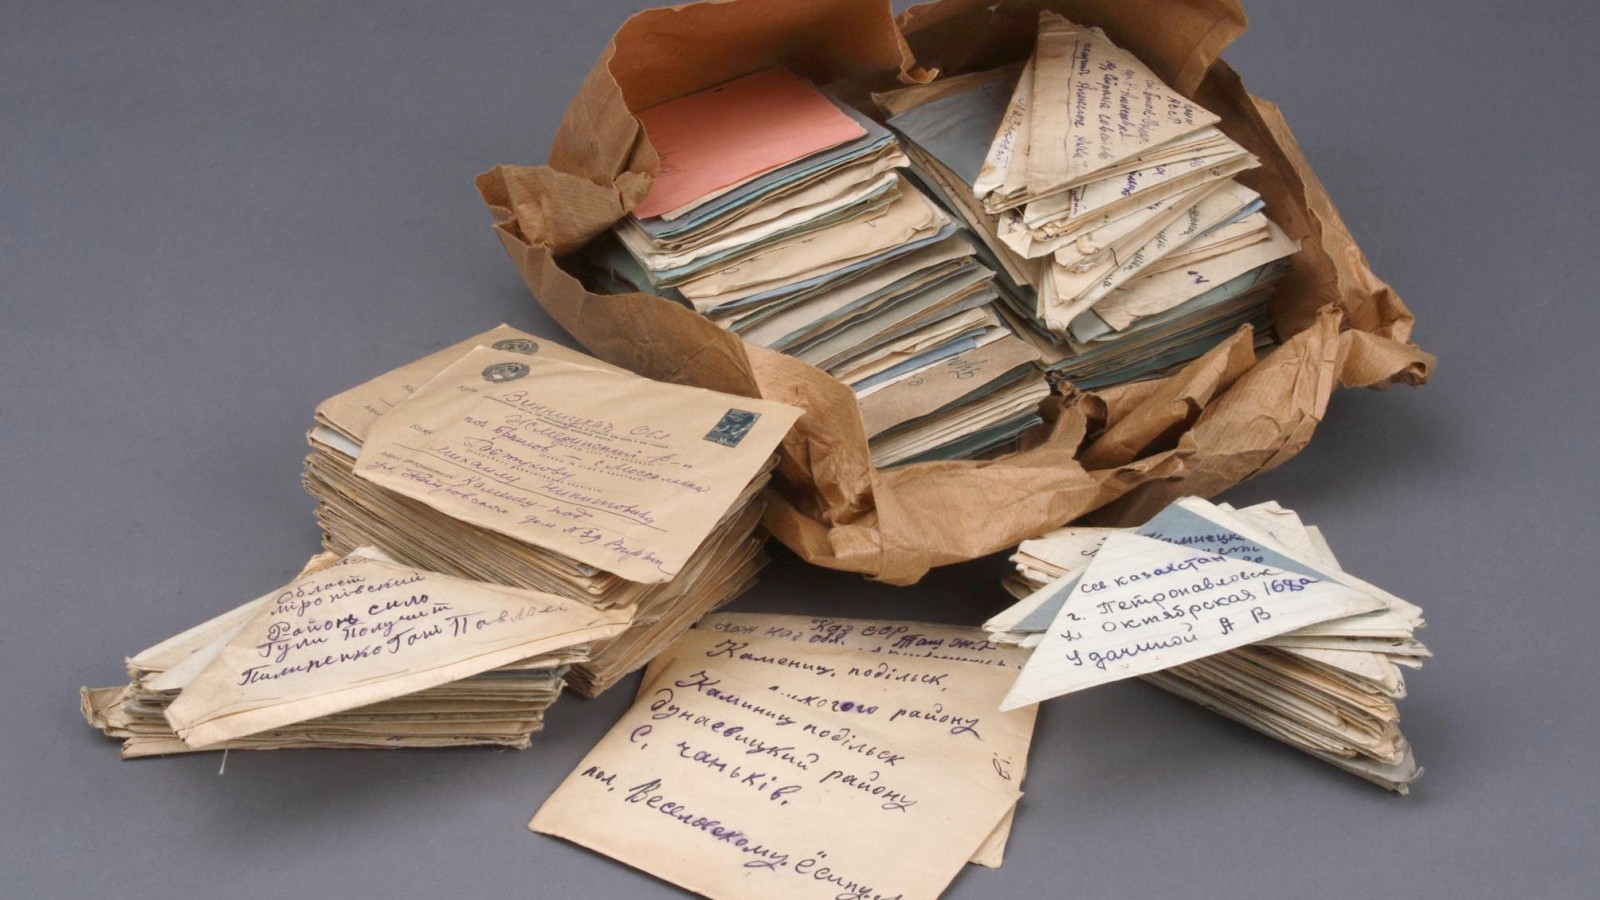 Geraubte Briefe aus dem Postamt der ukrainischen Stadt Kamenez Podolski, 1941/42,im Jahr 2009 der Republik Ukraine übergeben
